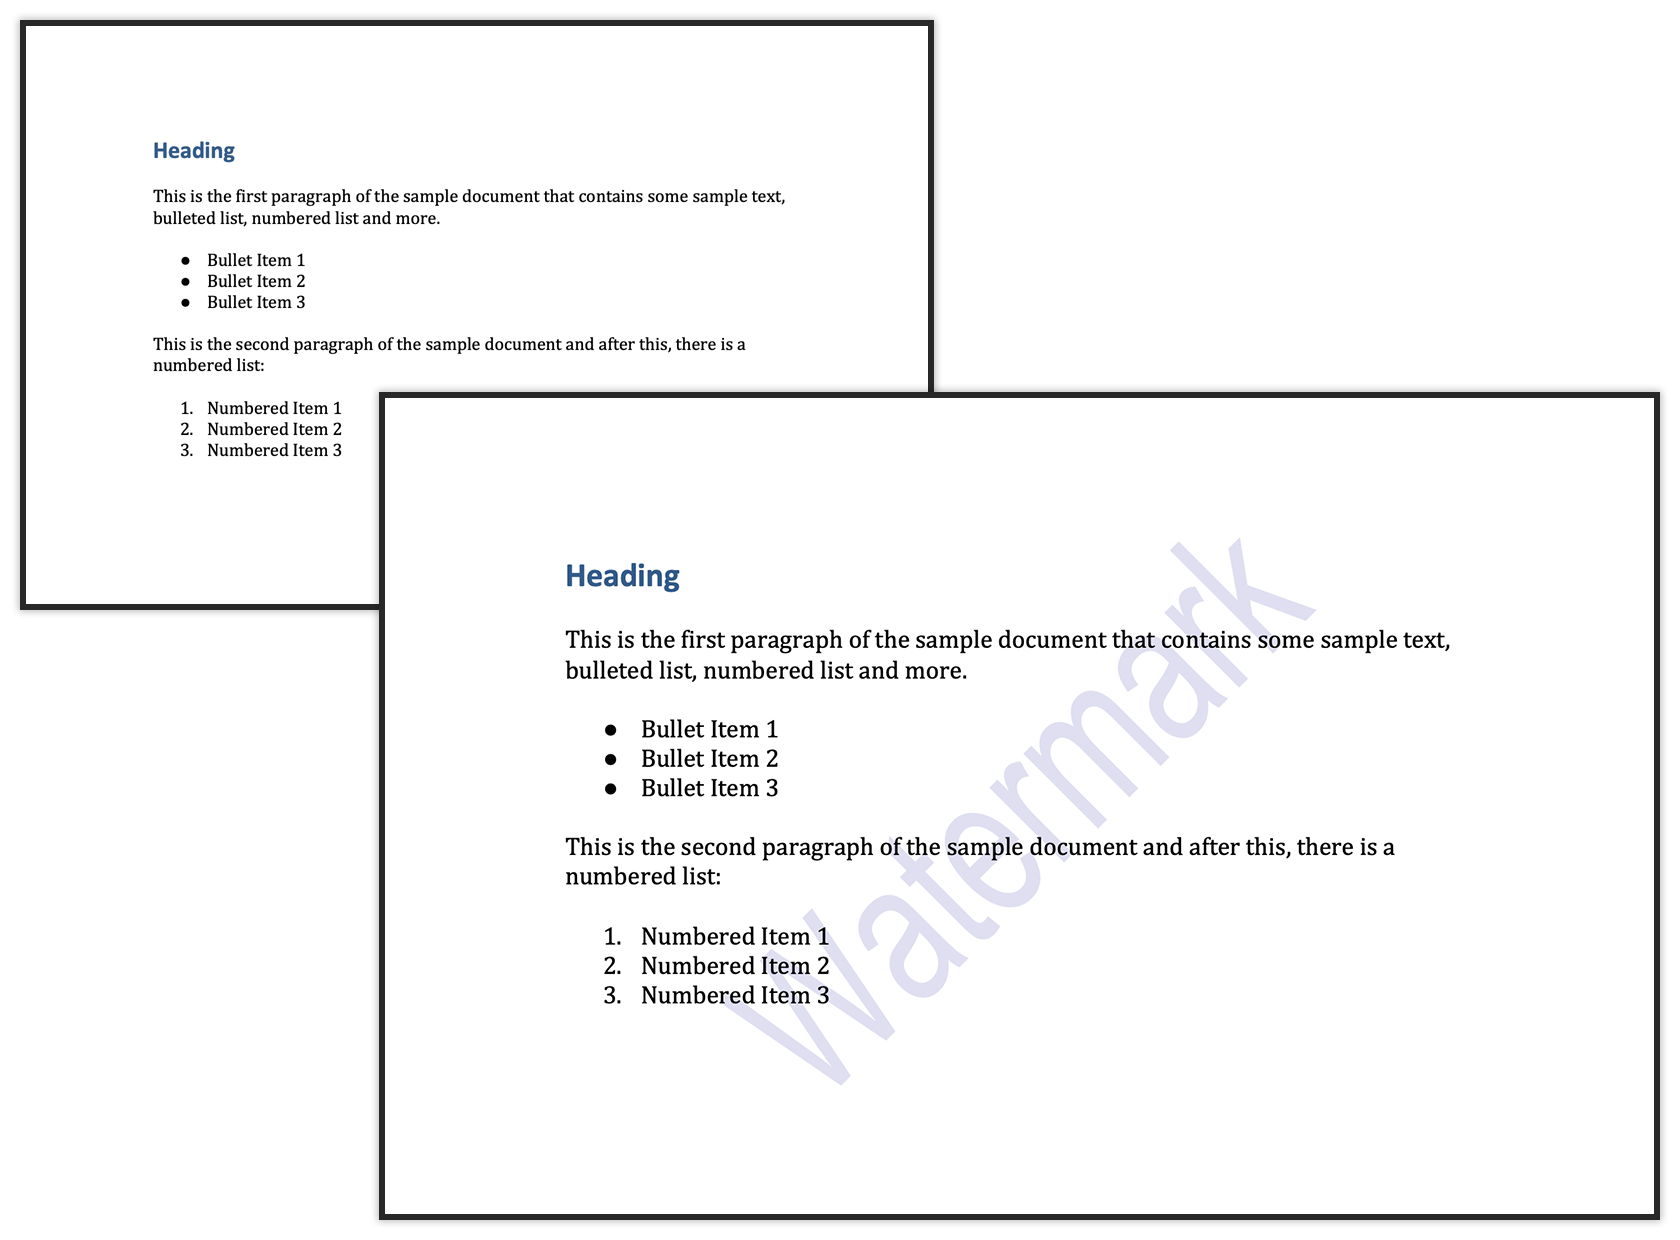 ตัวอย่างลายน้ำข้อความในเอกสาร Word โดยใช้ Java